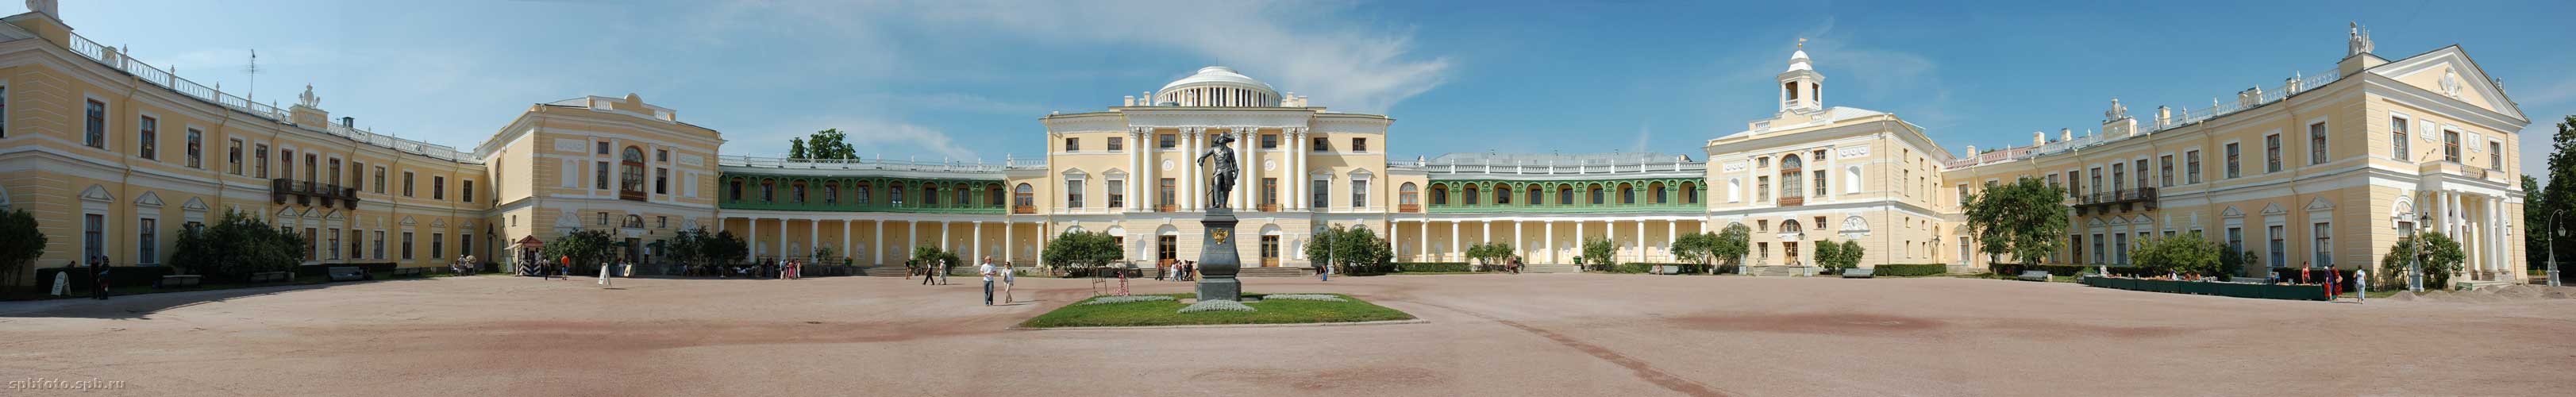 Павловский дворец. Панорама